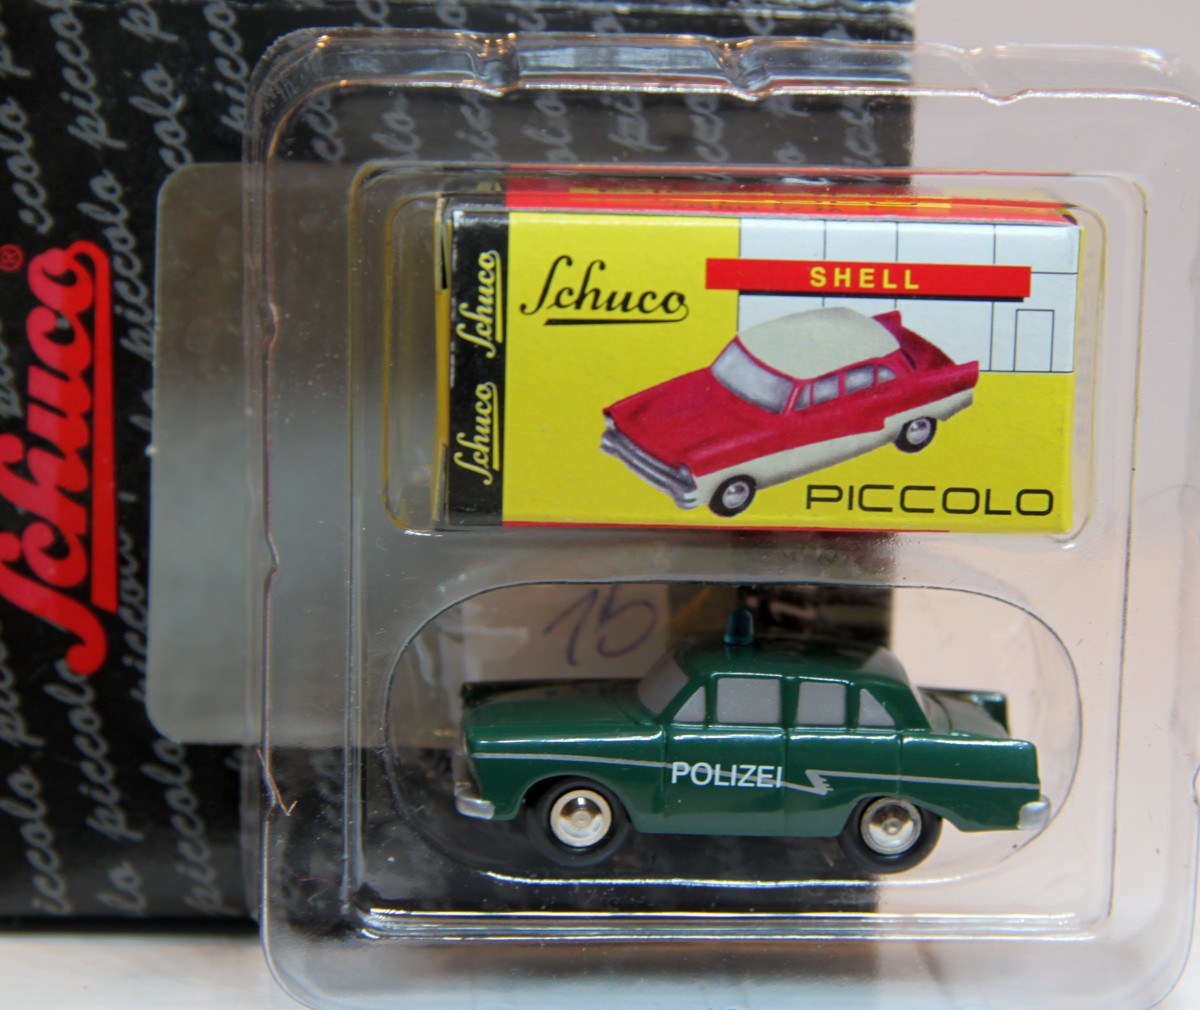 Schuco Piccolo 01412 Ford 17 M "Polizei", 1:90 Metallmodell, in OVP